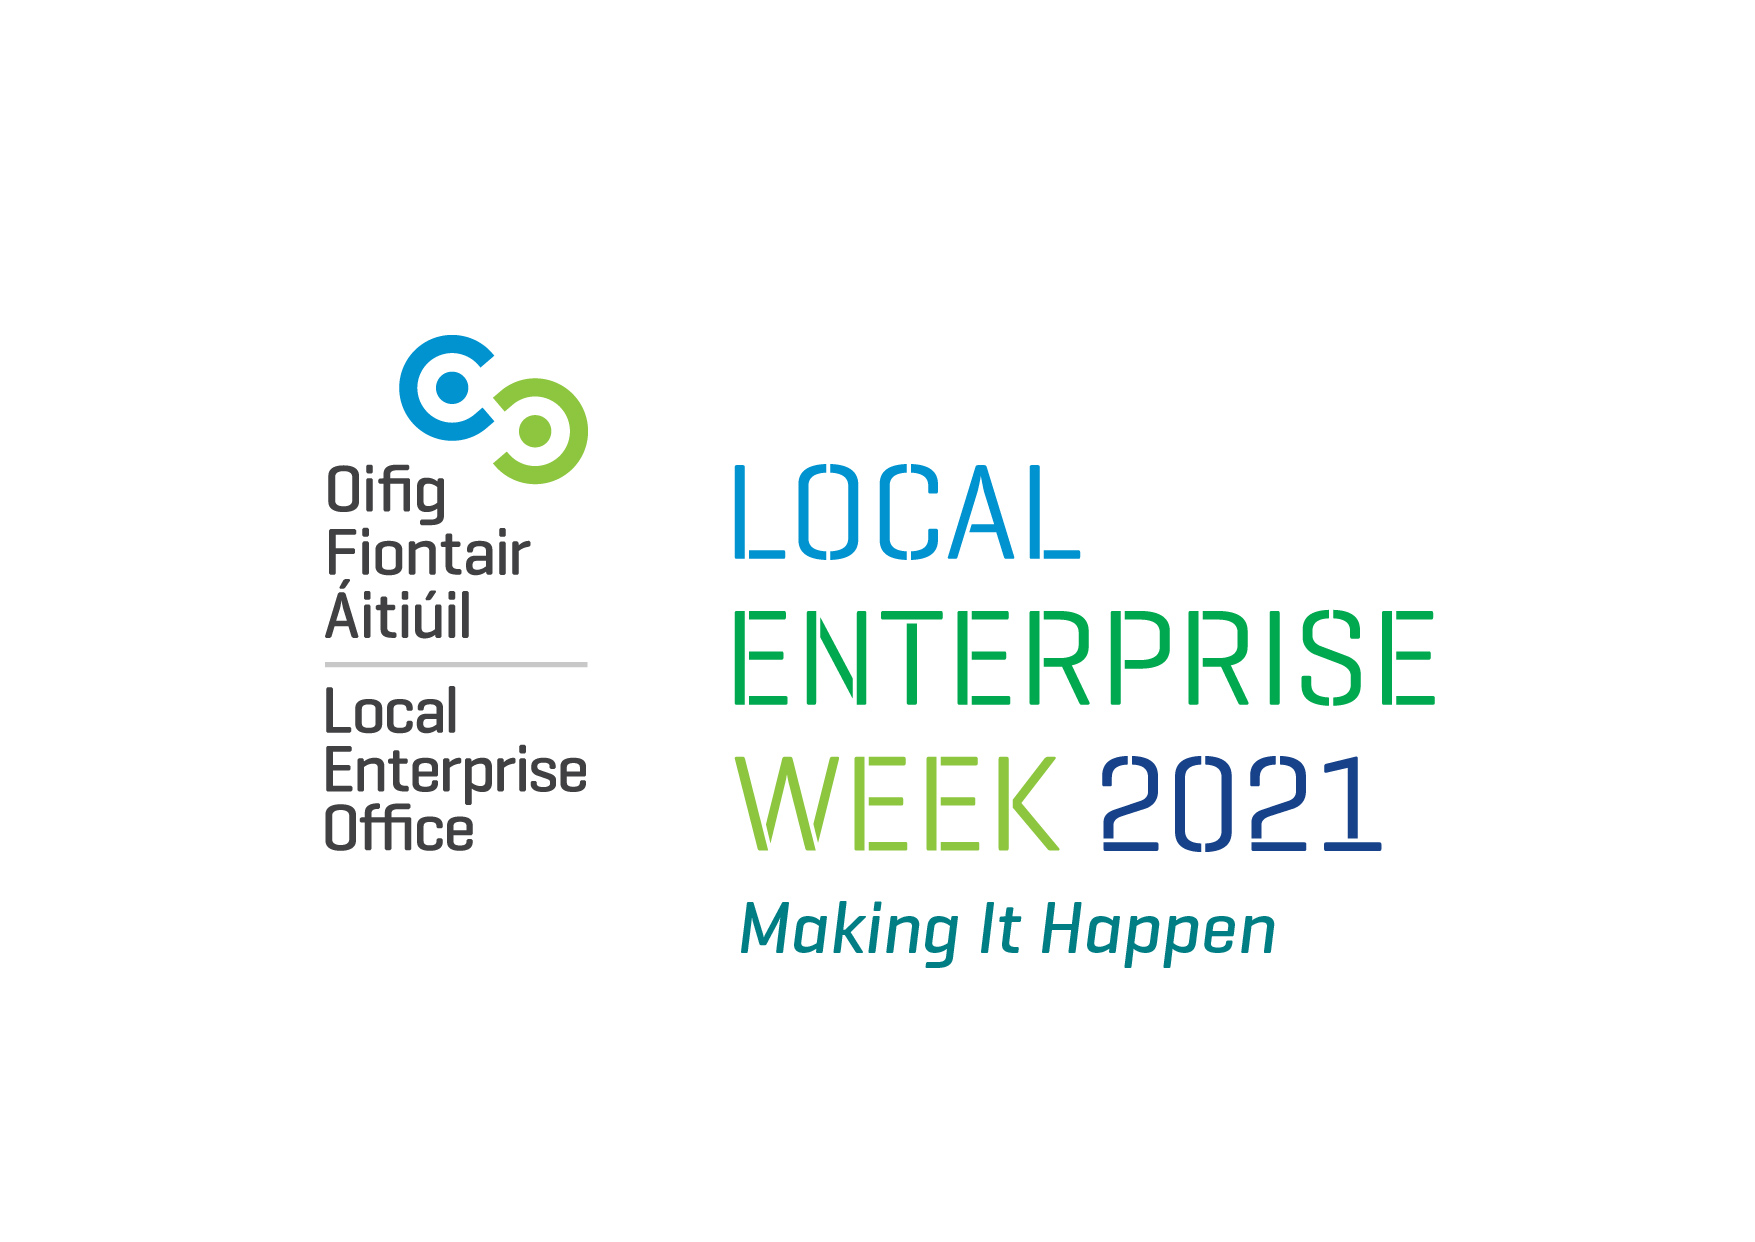 Enterprise Week 2021